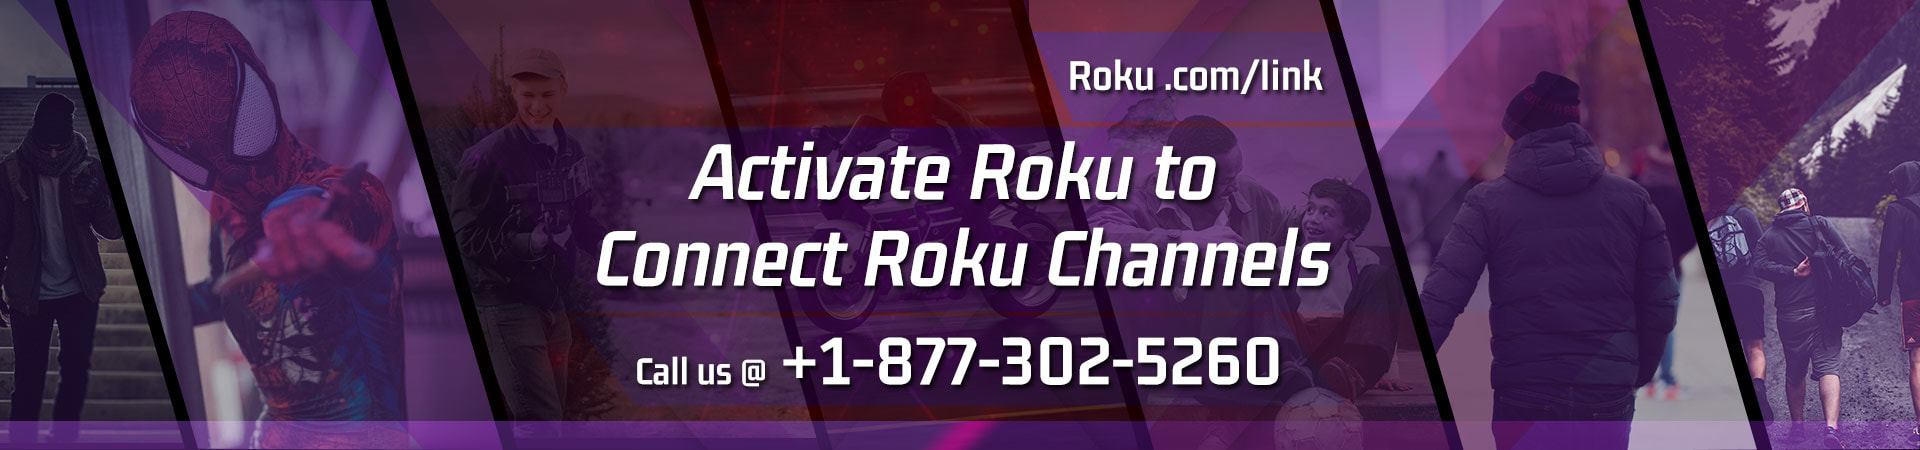 Roku.com/link